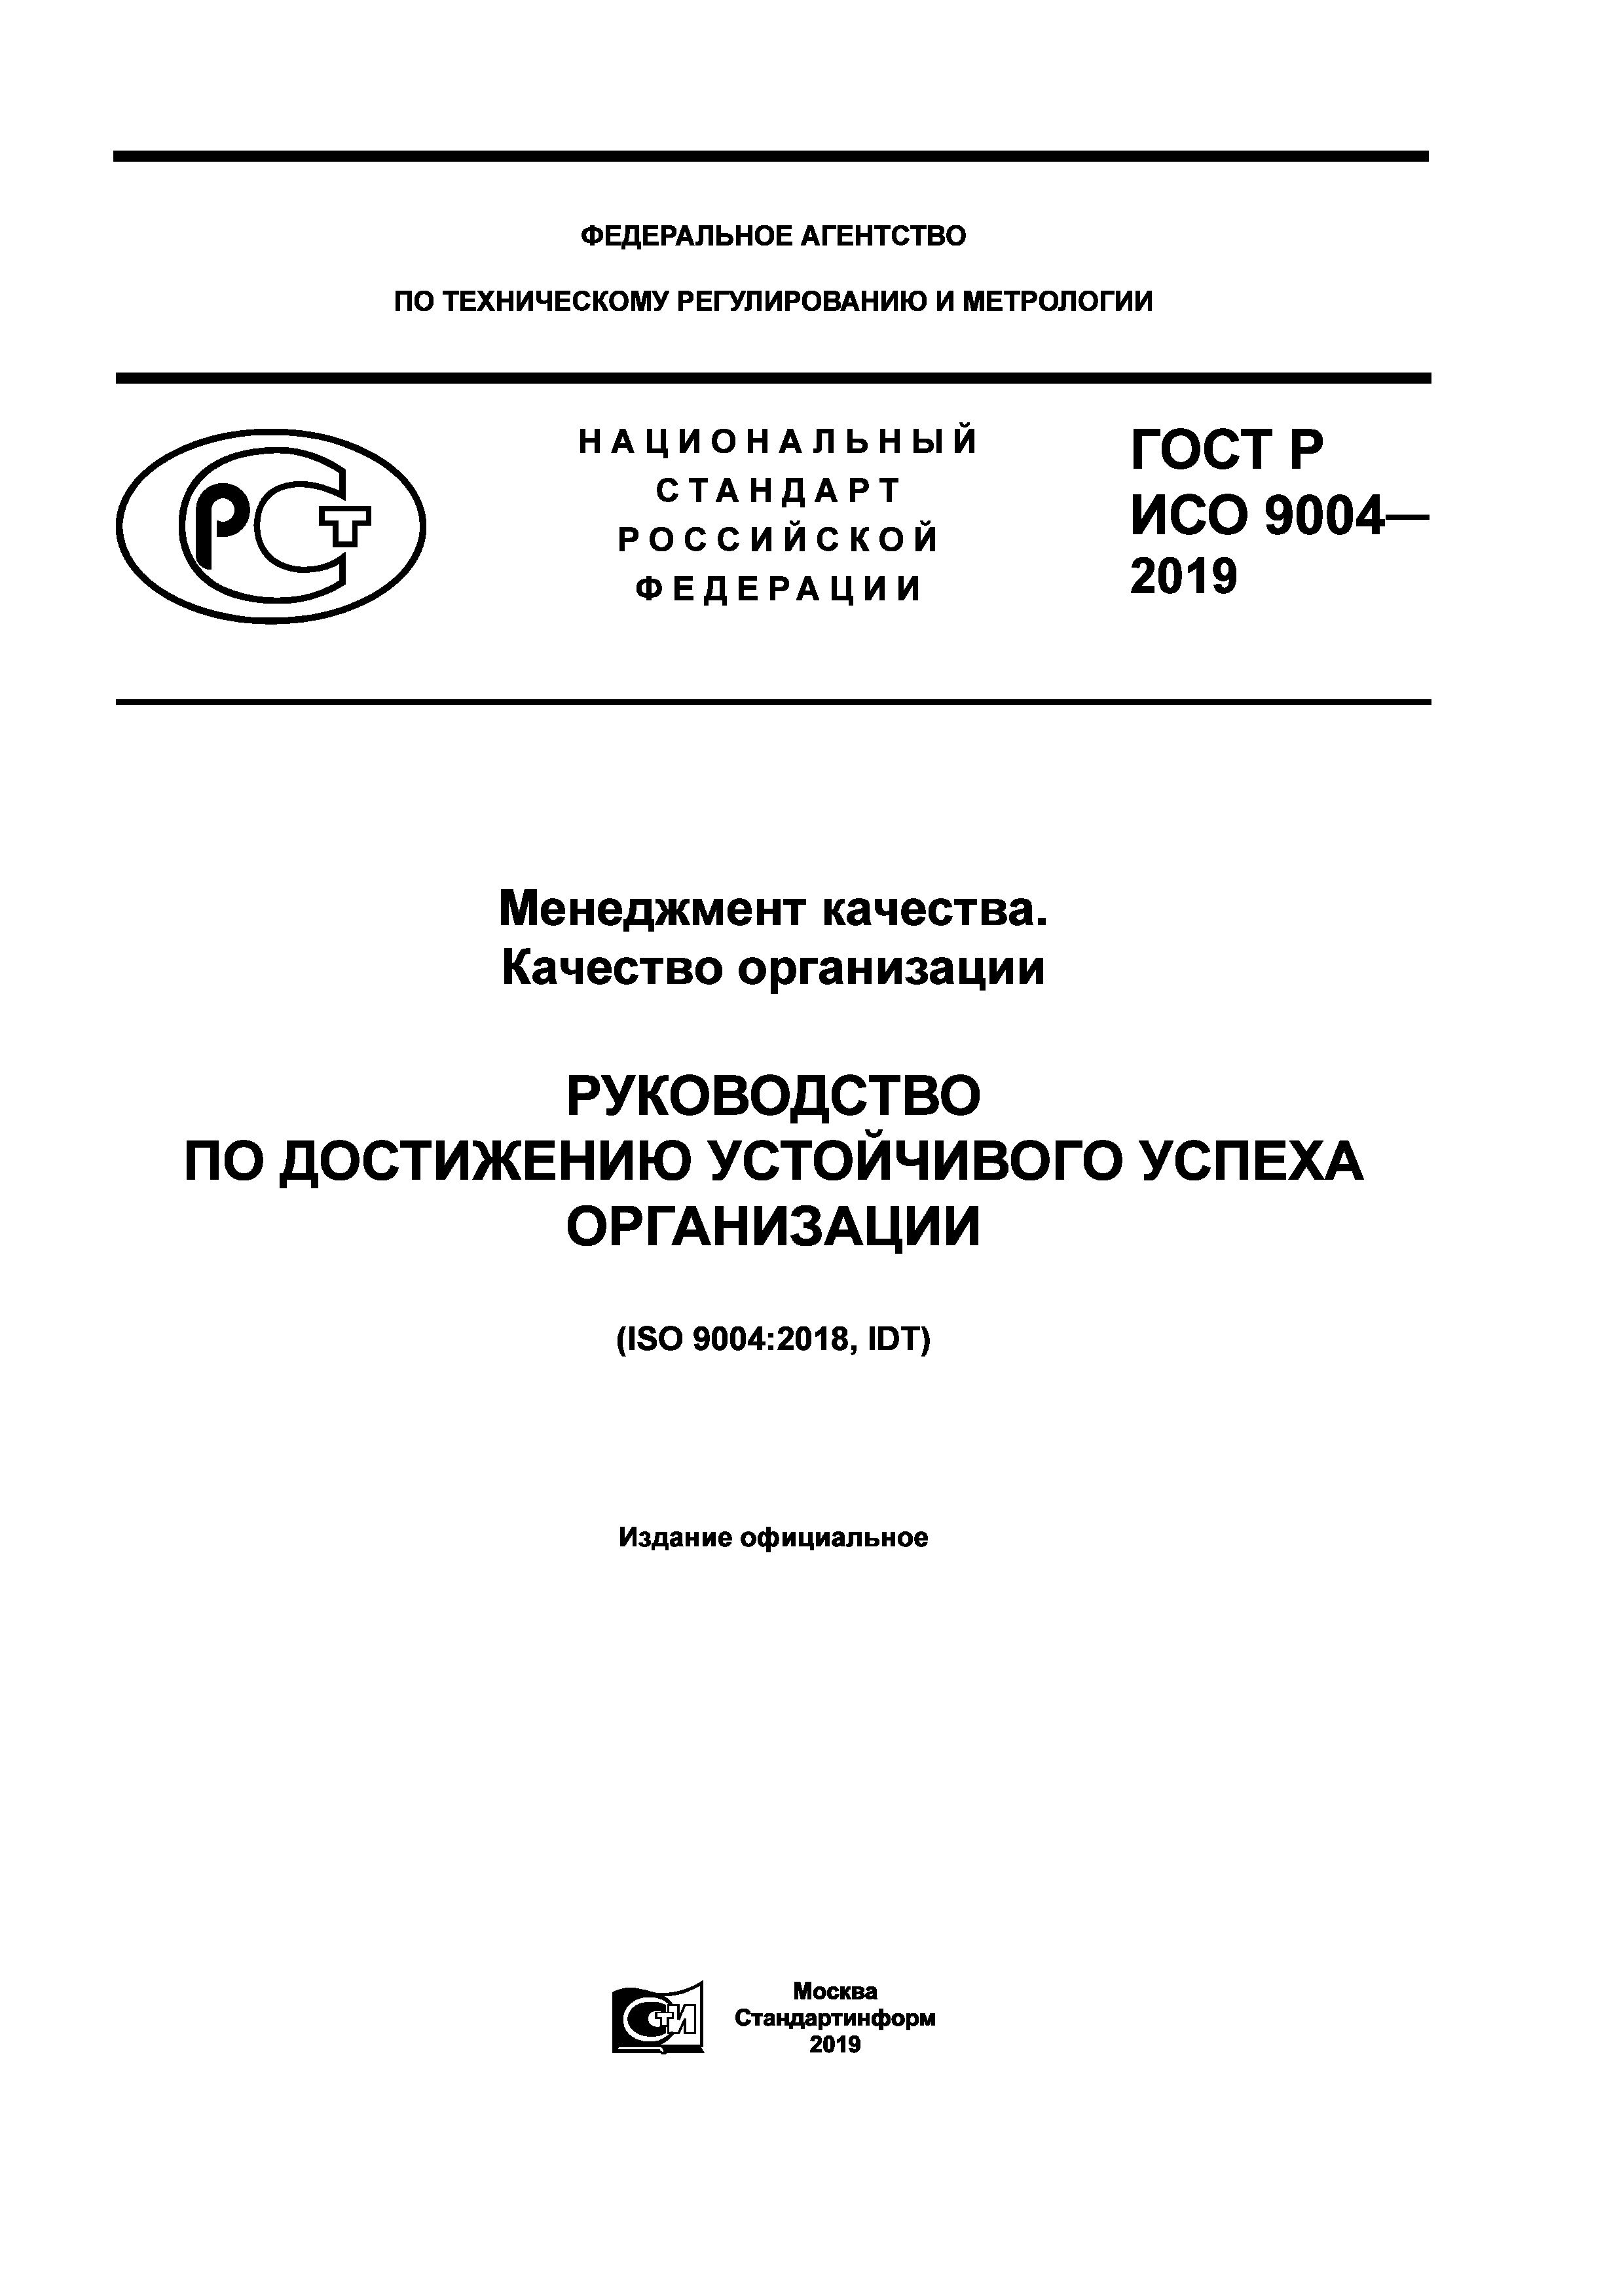 ГОСТ Р ИСО 9004-2019